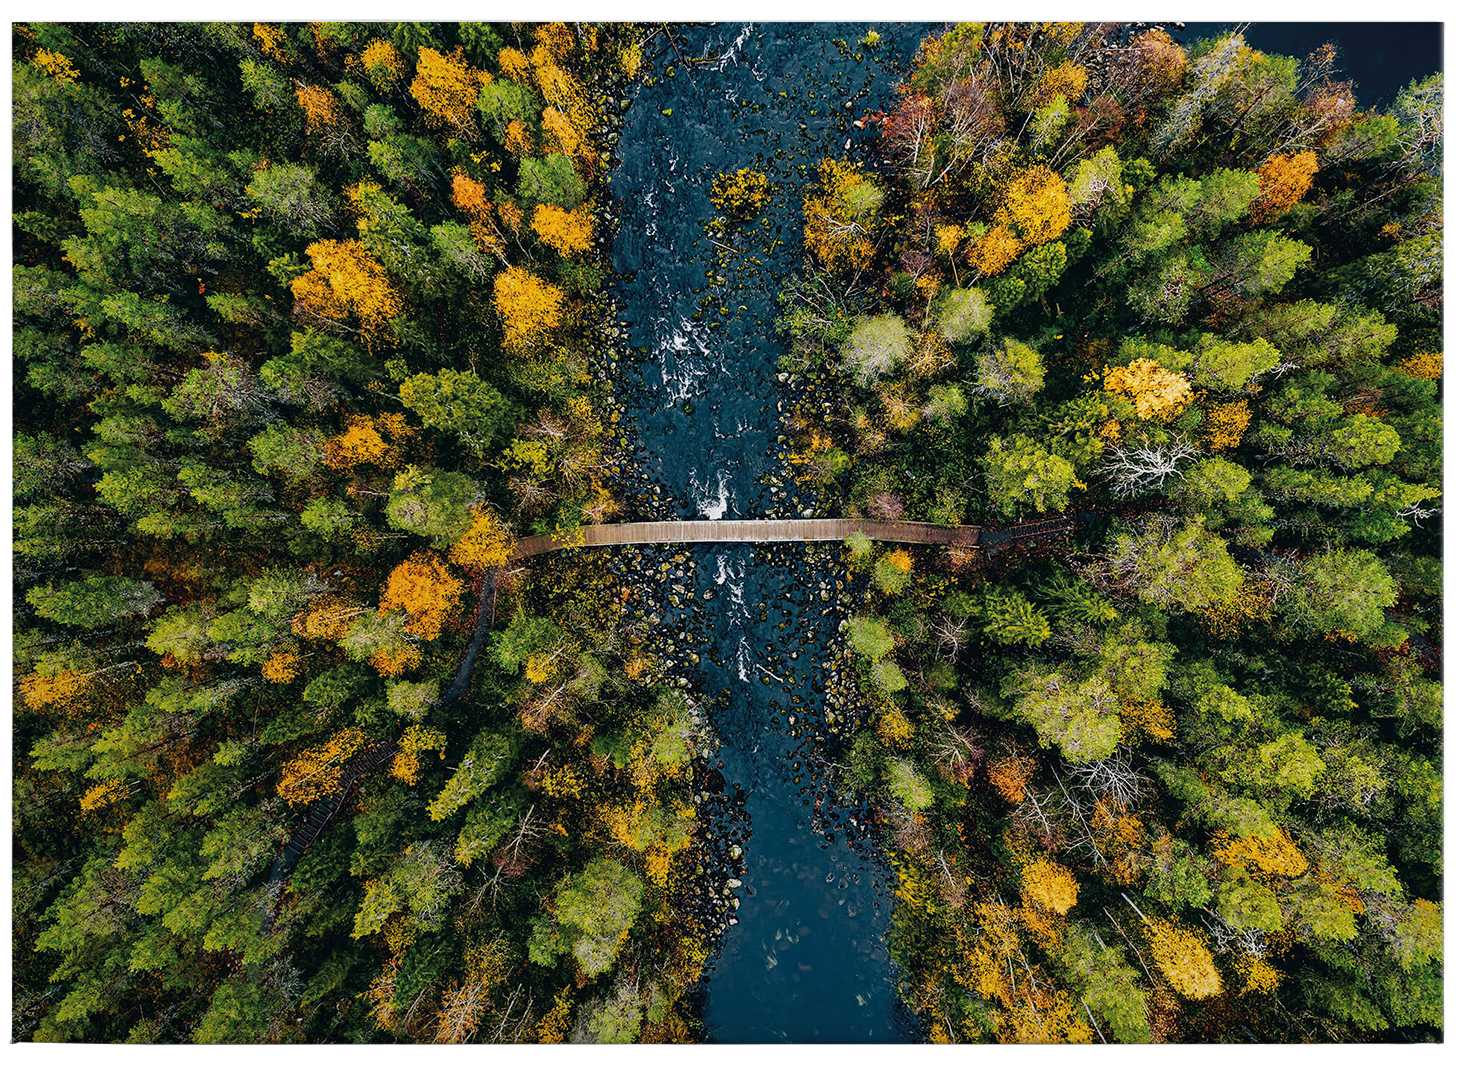             Quadro paesaggio su tela Foresta in Finlandia - 0,70 m x 0,50 m
        